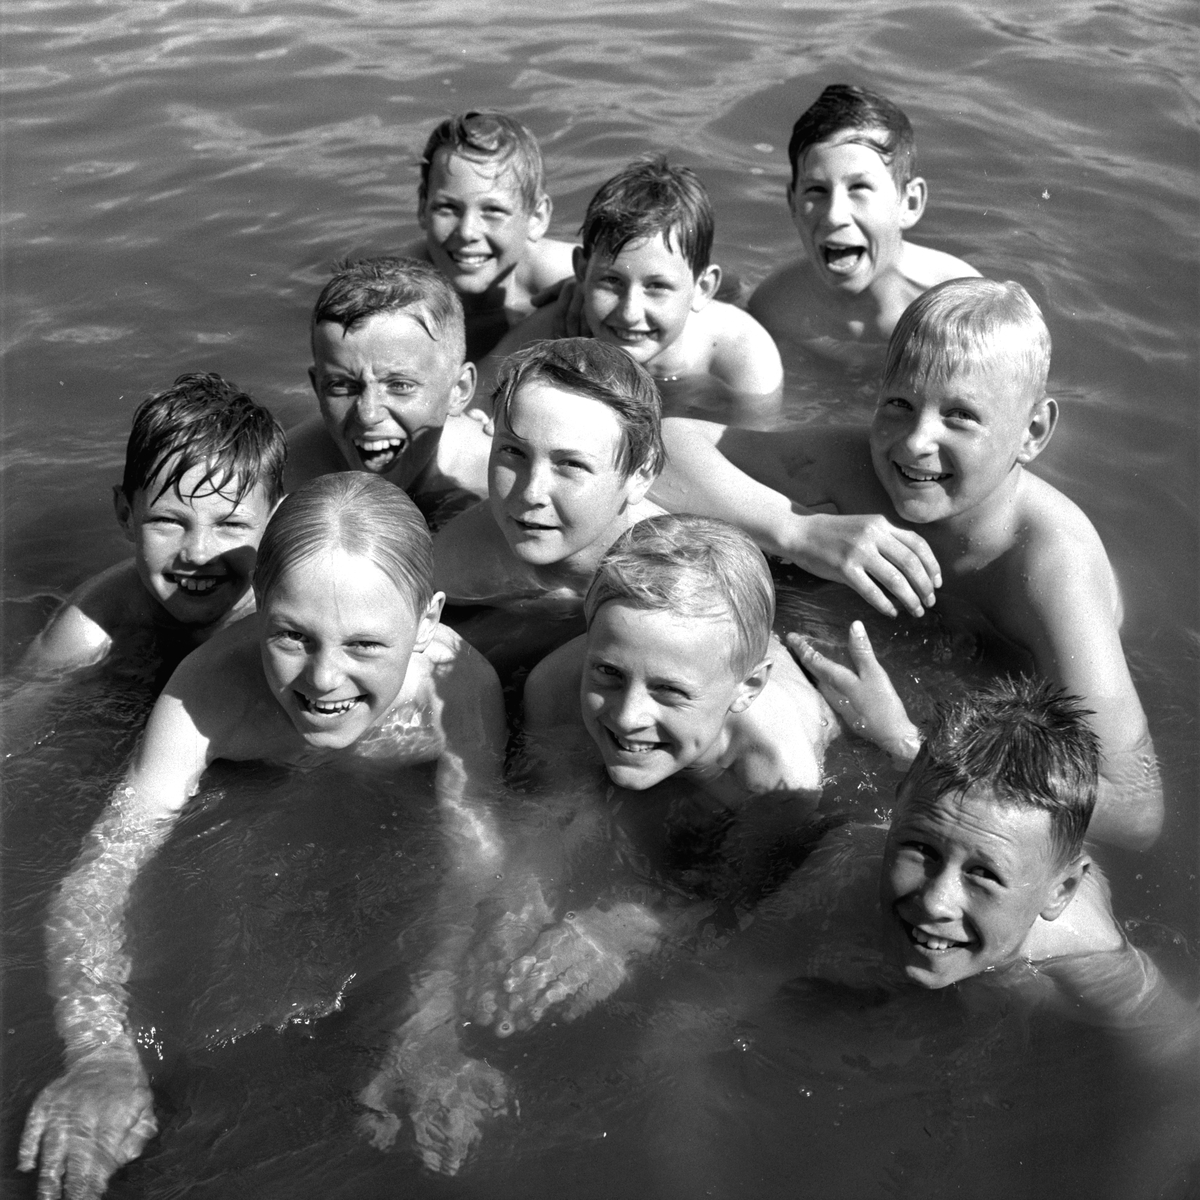 Första doppet i Gustavsvik.
Maj 1956.